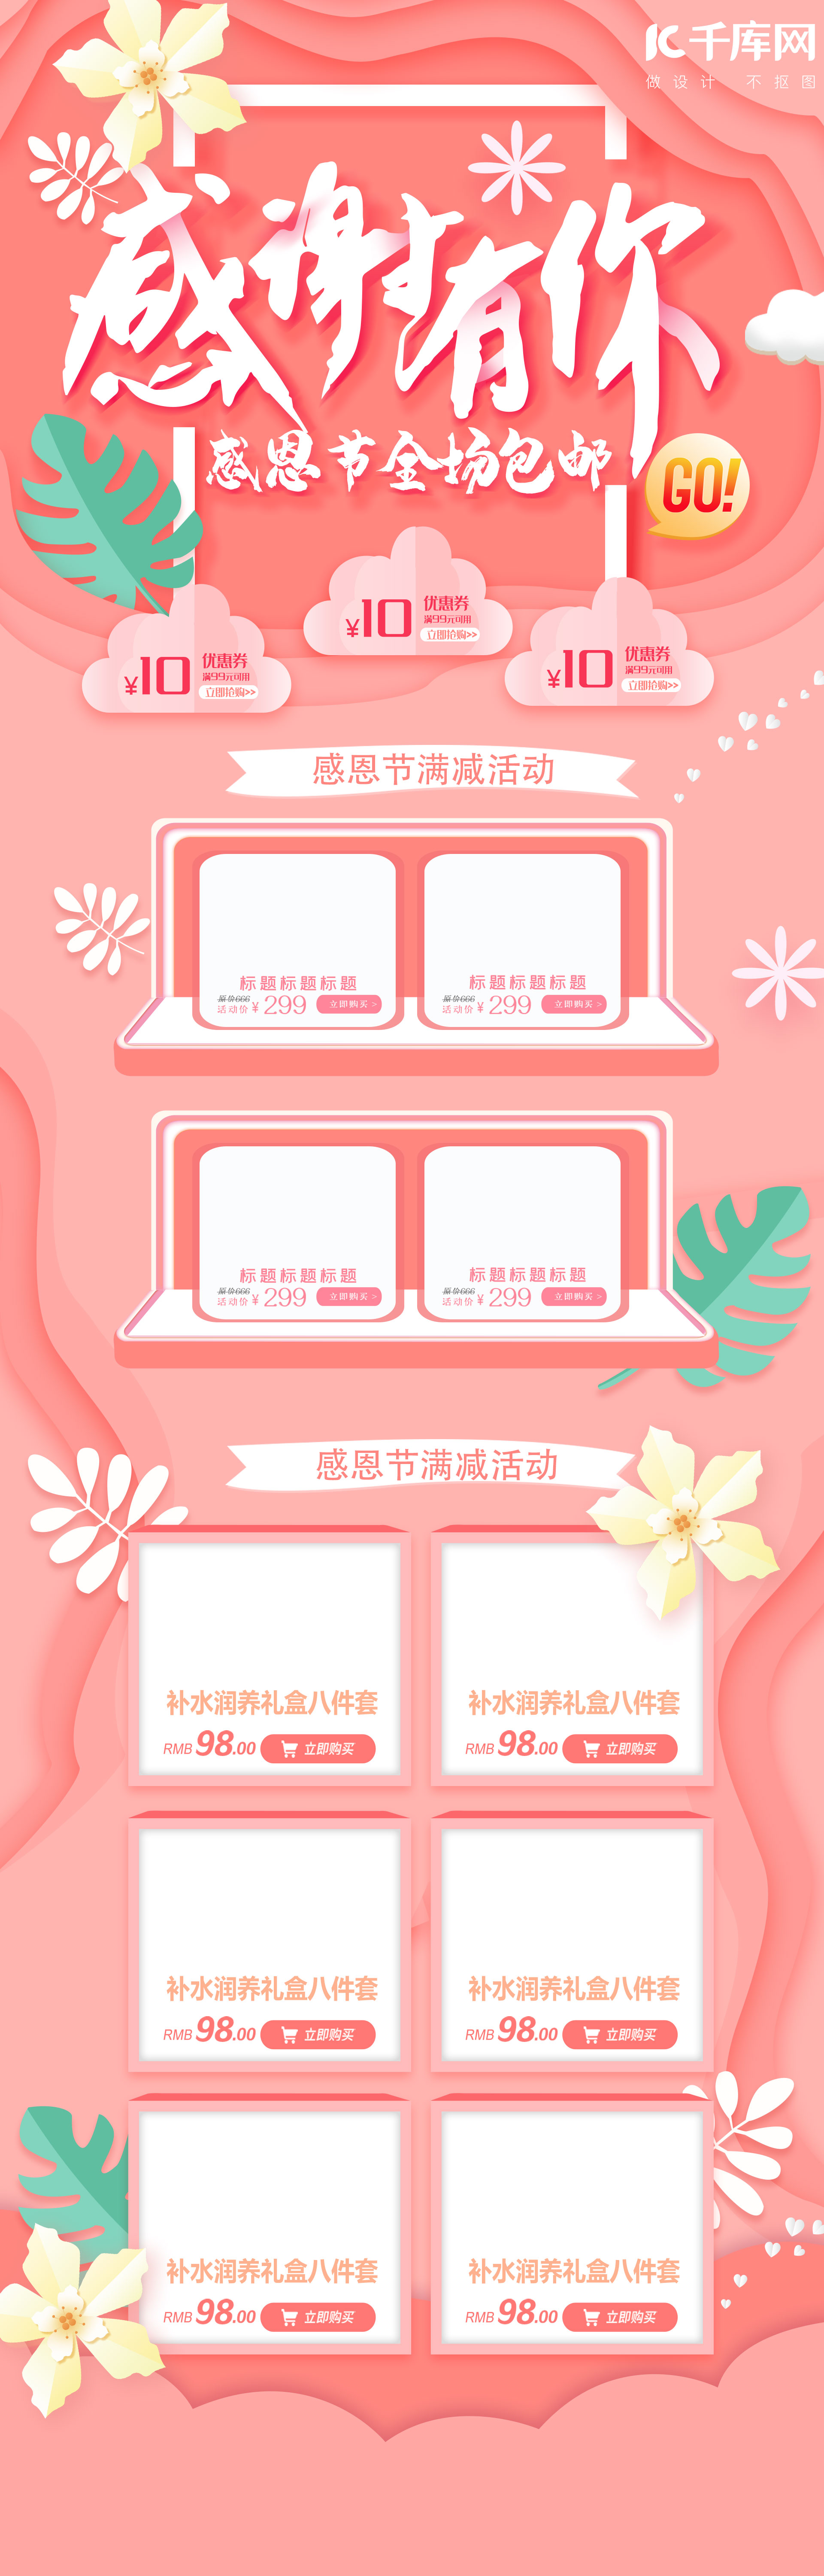 粉色温馨剪纸风格感恩节电商淘宝首页模板图片